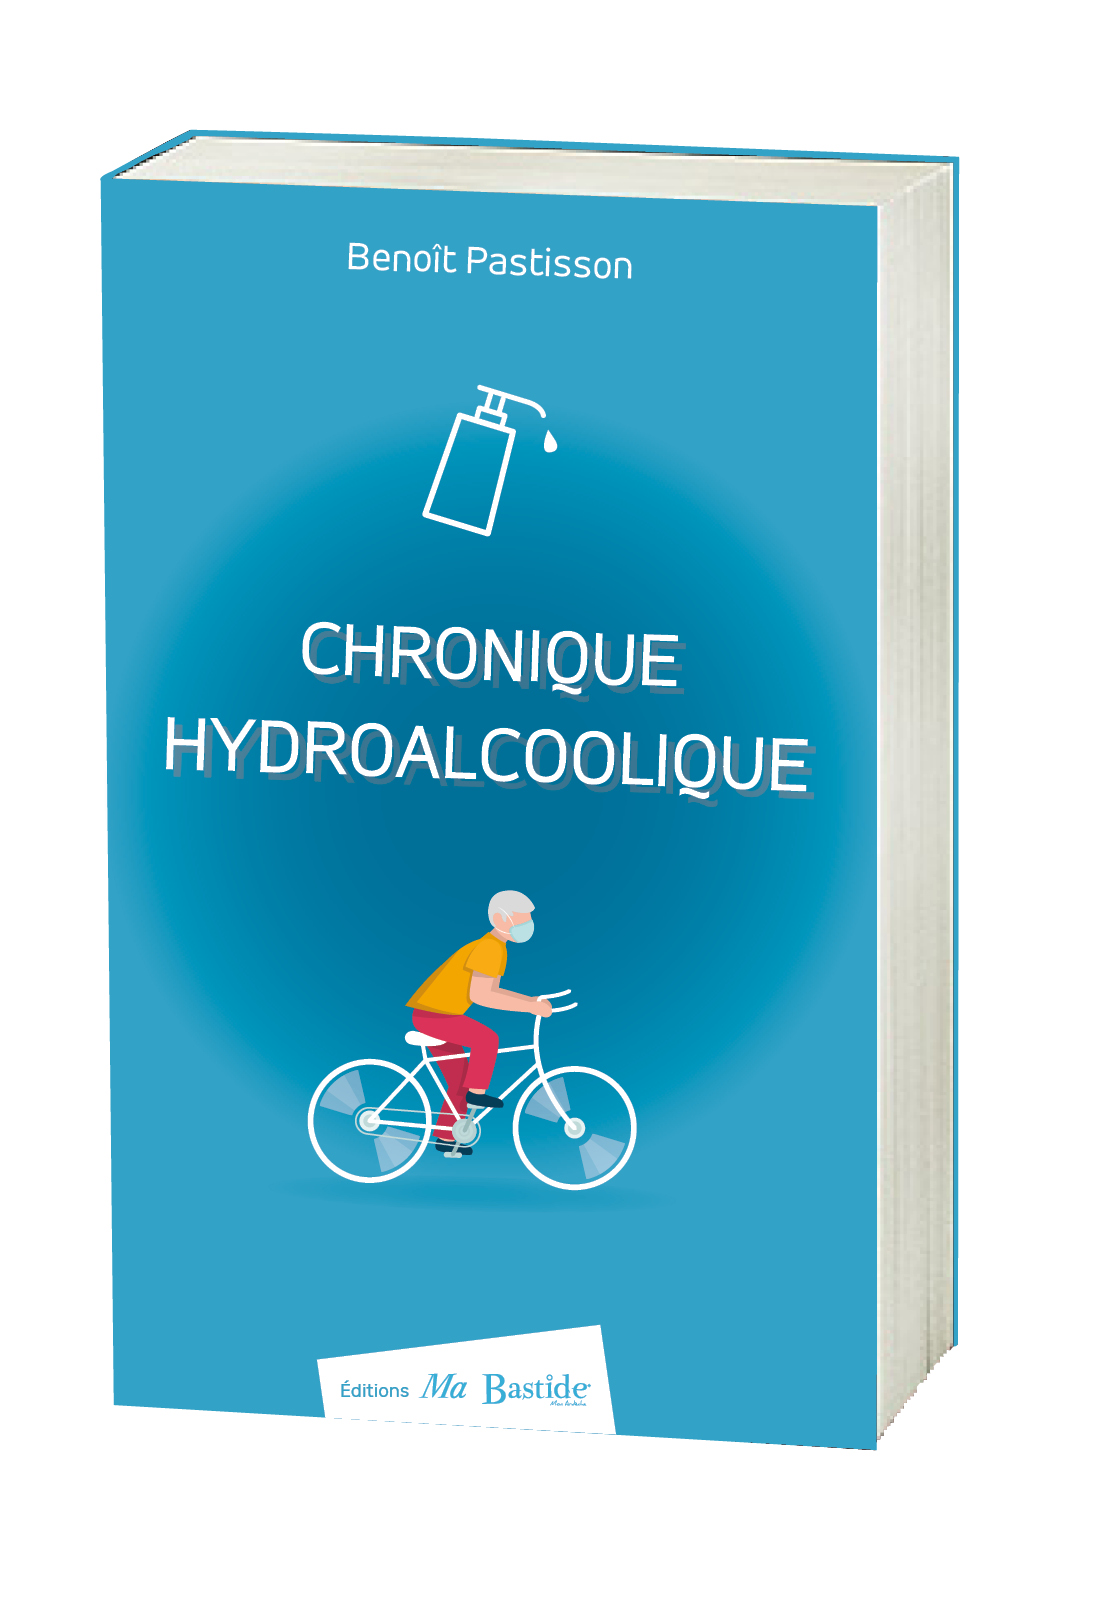 Benoît Pastisson pour "Chronique hydroalcoolique